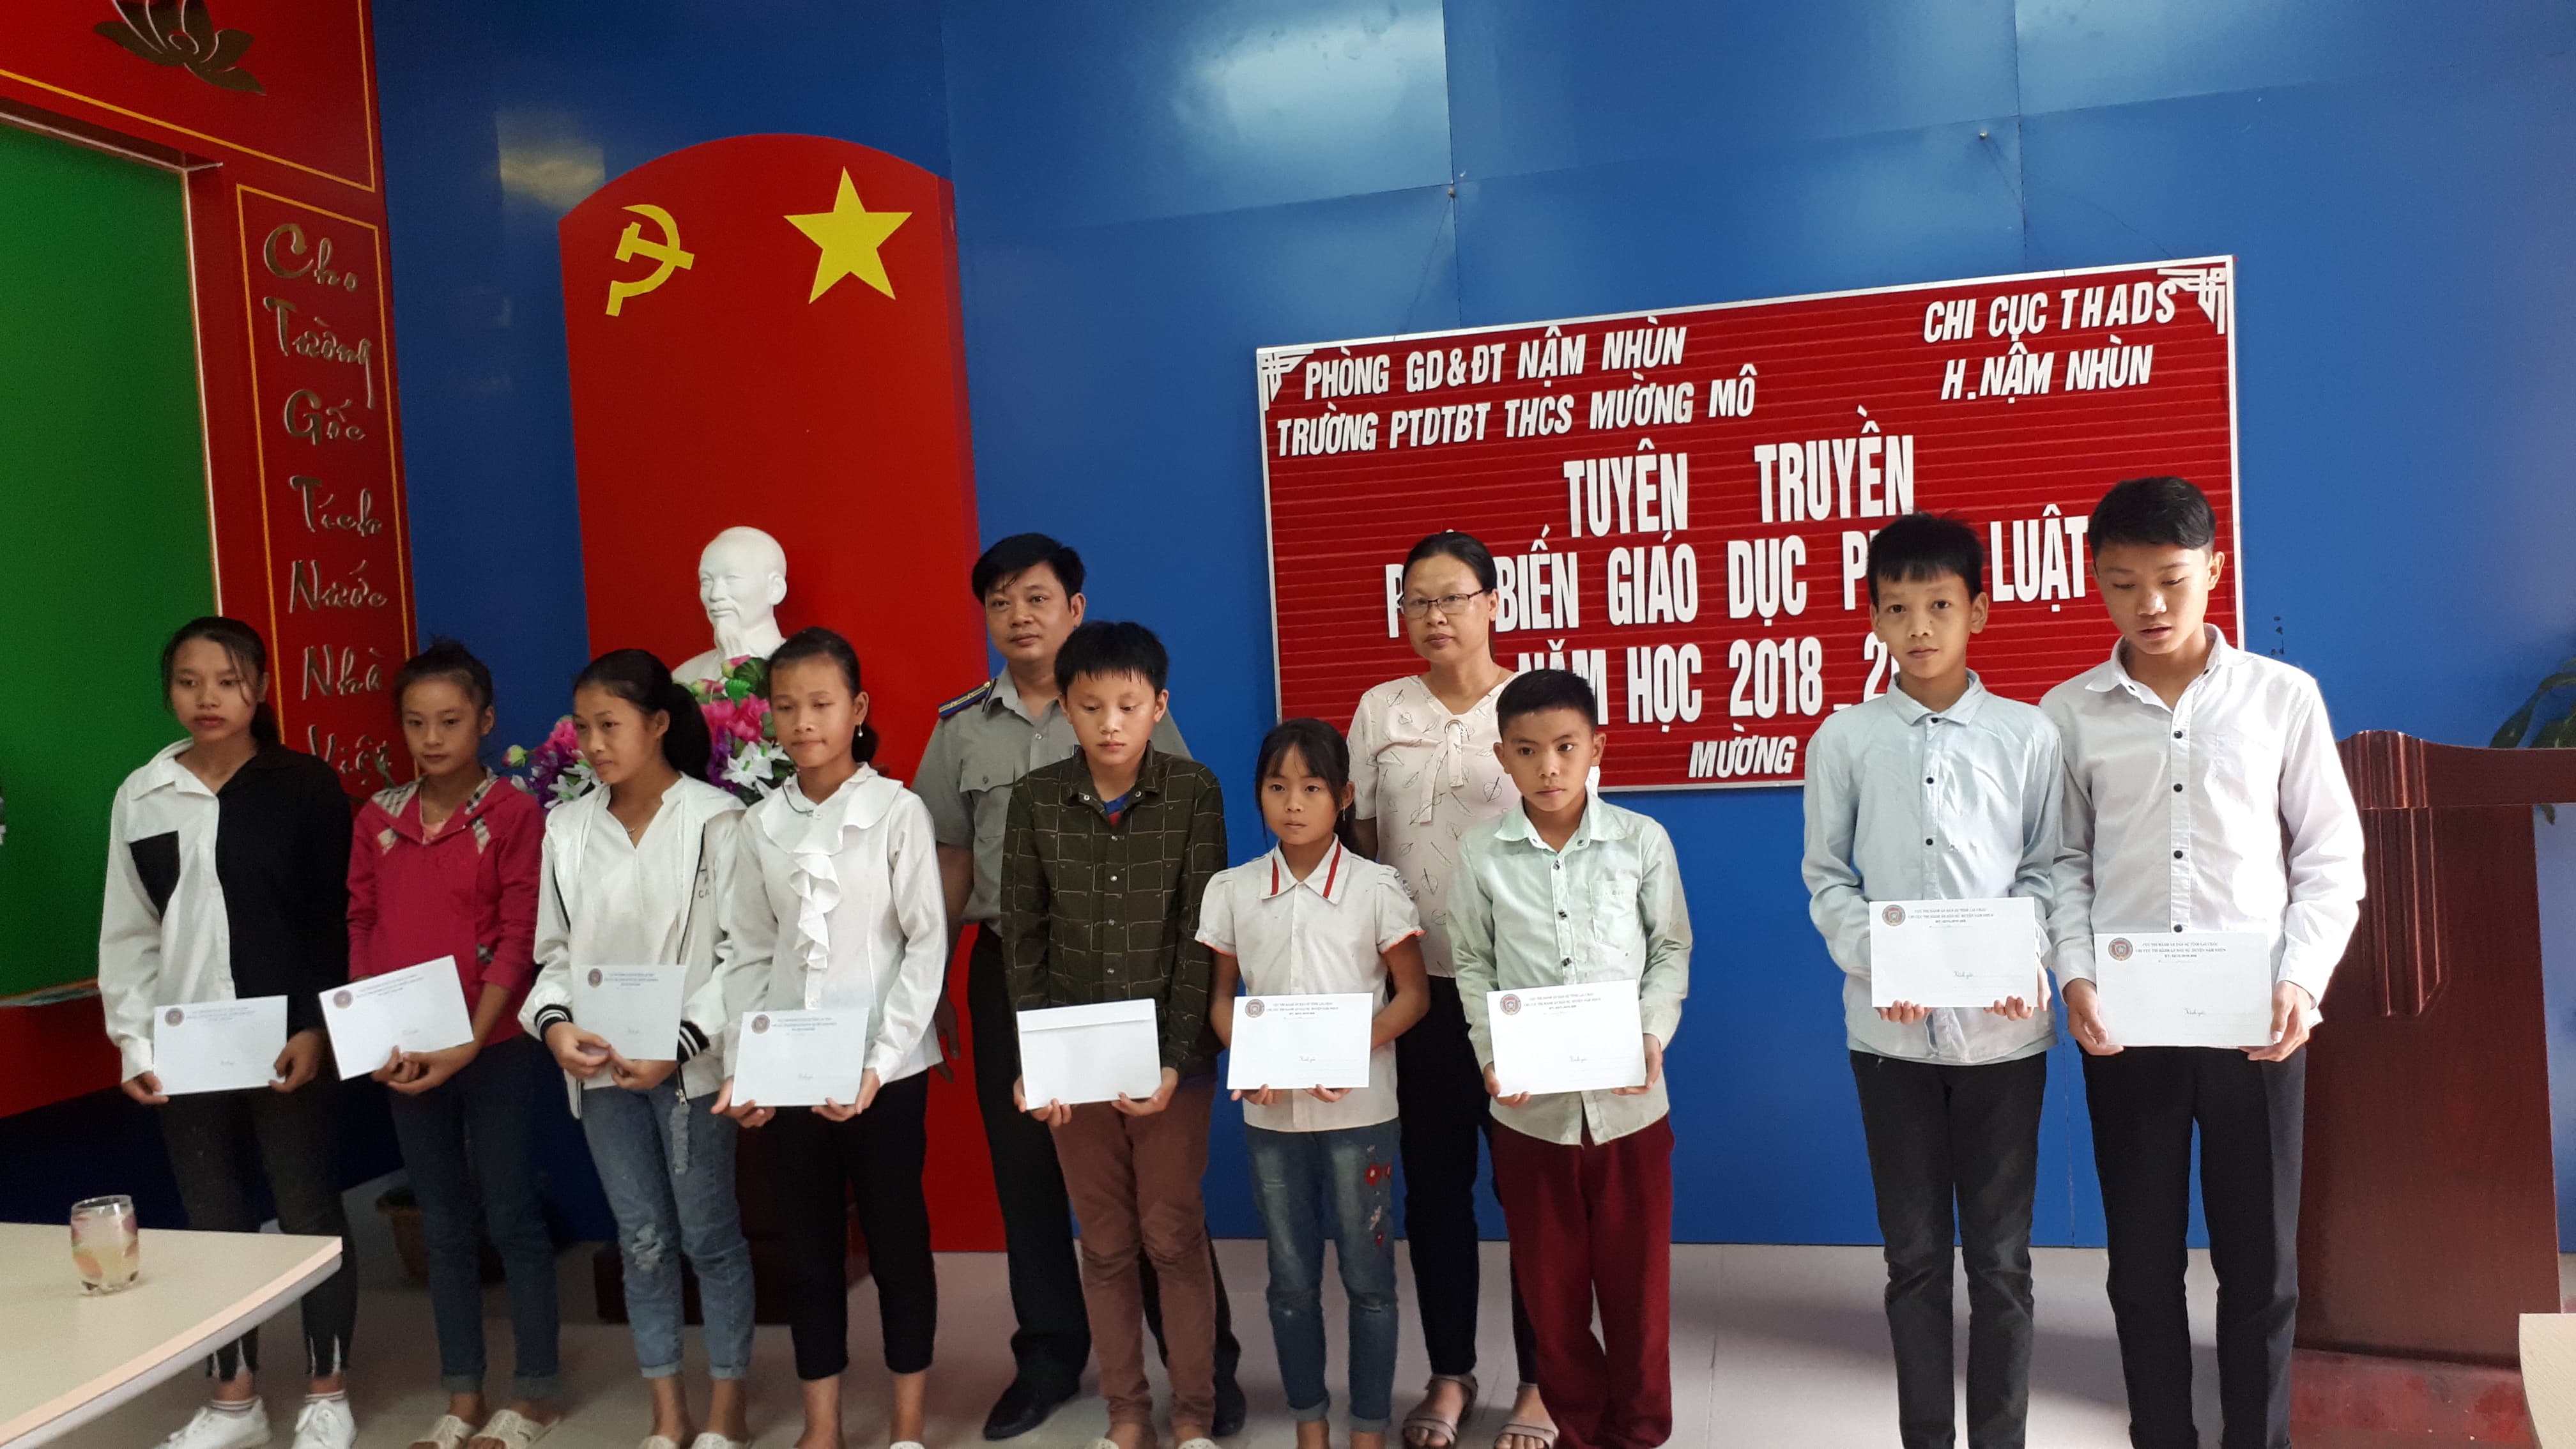 Chi cục Thi hành án dân sự huyện Nậm Nhùn tổ chức tuyên truyền, phổ biến, giáo dục pháp luật tại Trường PTDTBT Trung học cơ sở xã Mường Mô